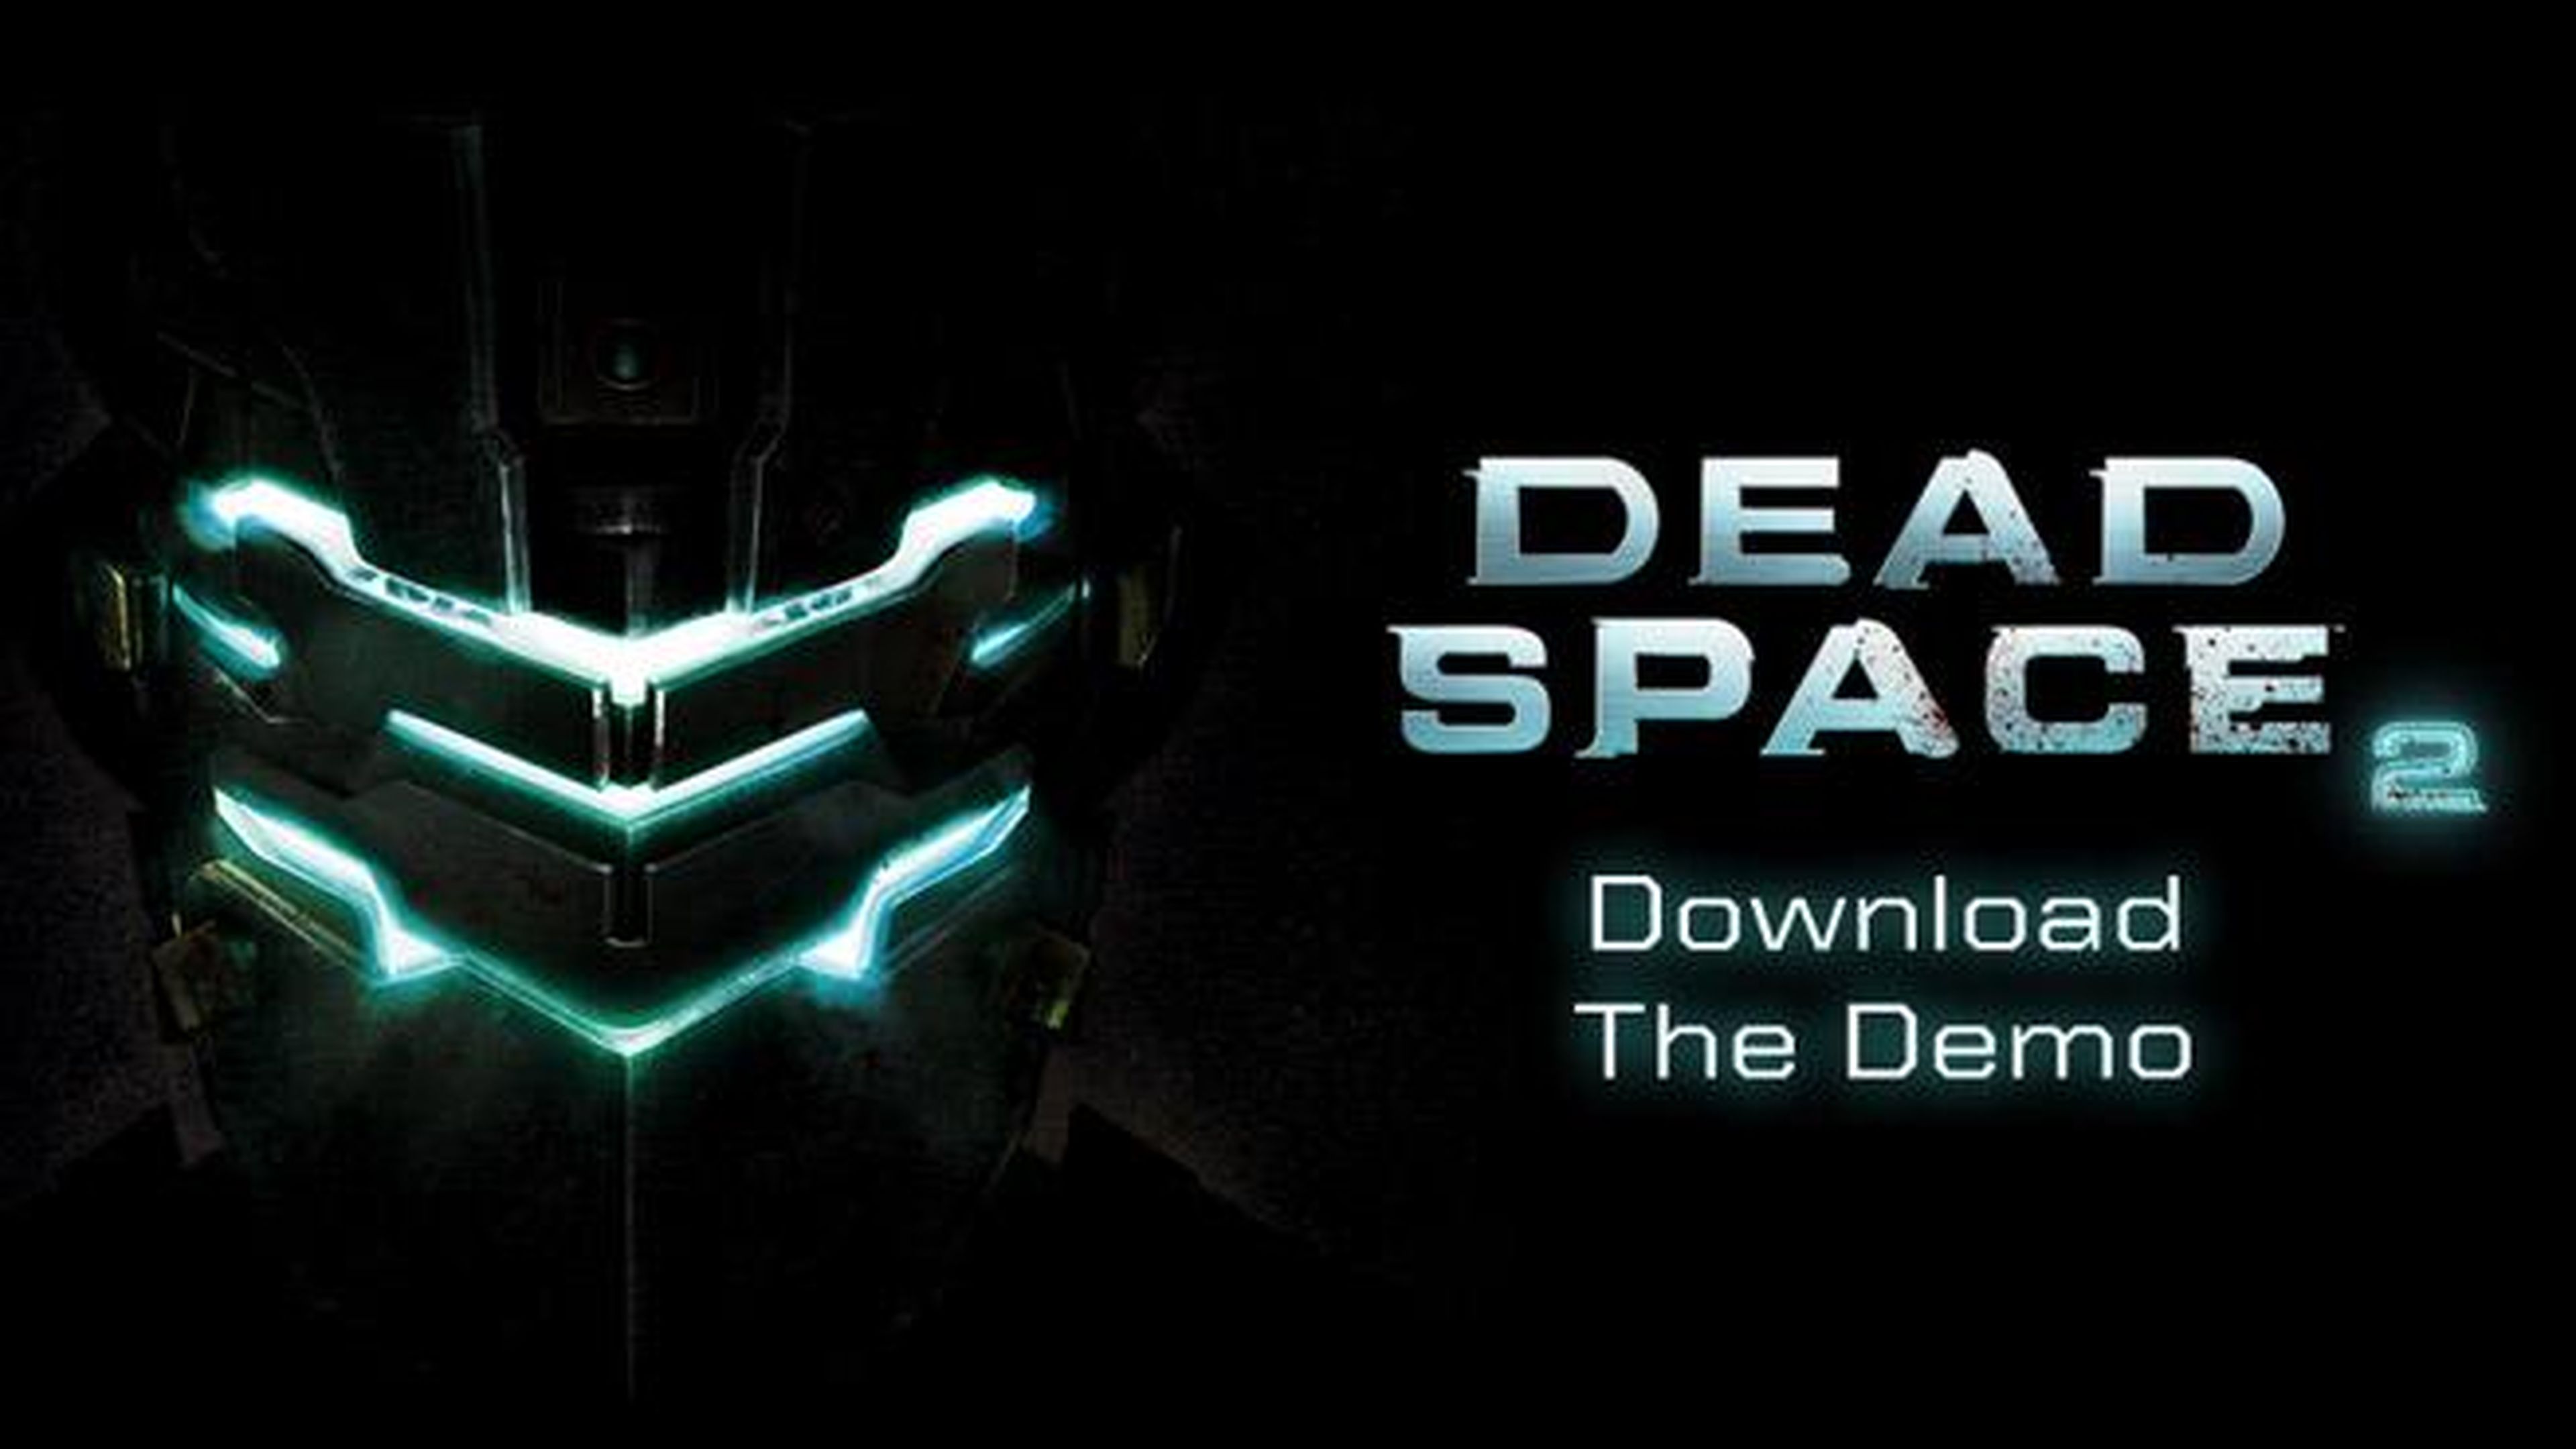 La demos de Dead Space 2... ¡¡hoy!!